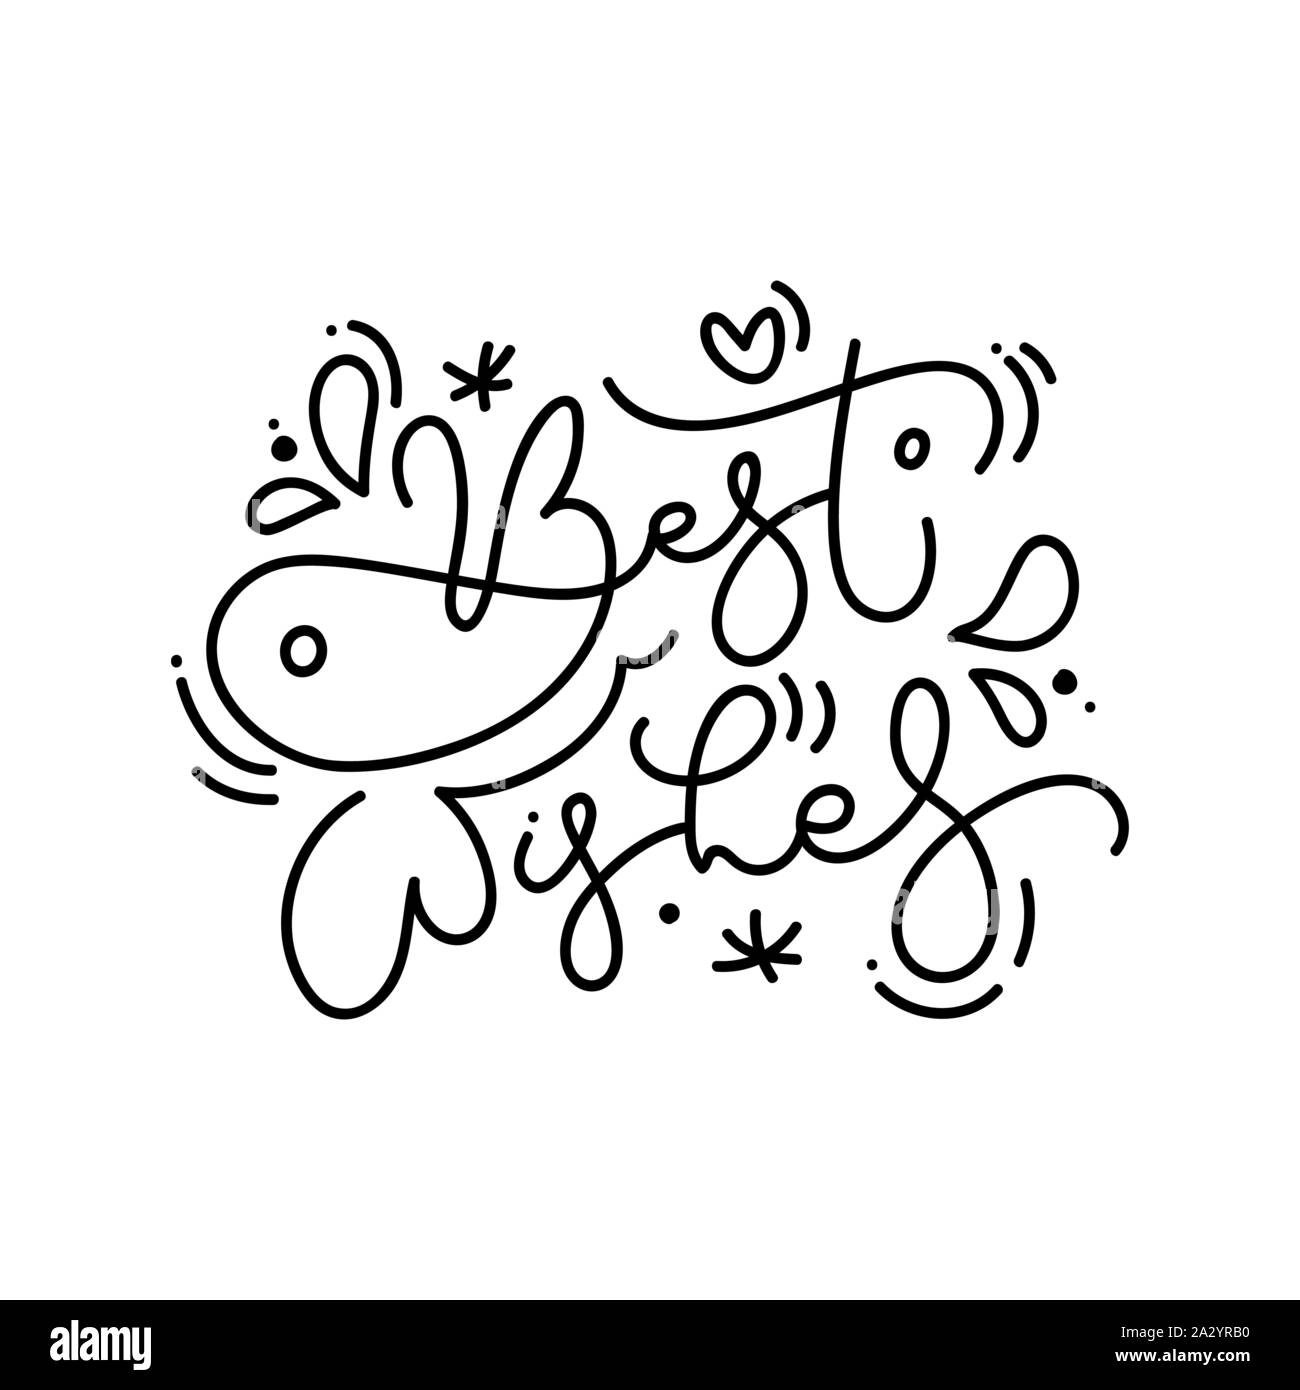 Beste Wünsche kalligrafischen Hand schriftliche Monoline-versicherer Weihnachten Text. Xmas Feiertage Beschriftung für Grußkarten, Poster, moderne Wintersaison Postkarte Stock Vektor